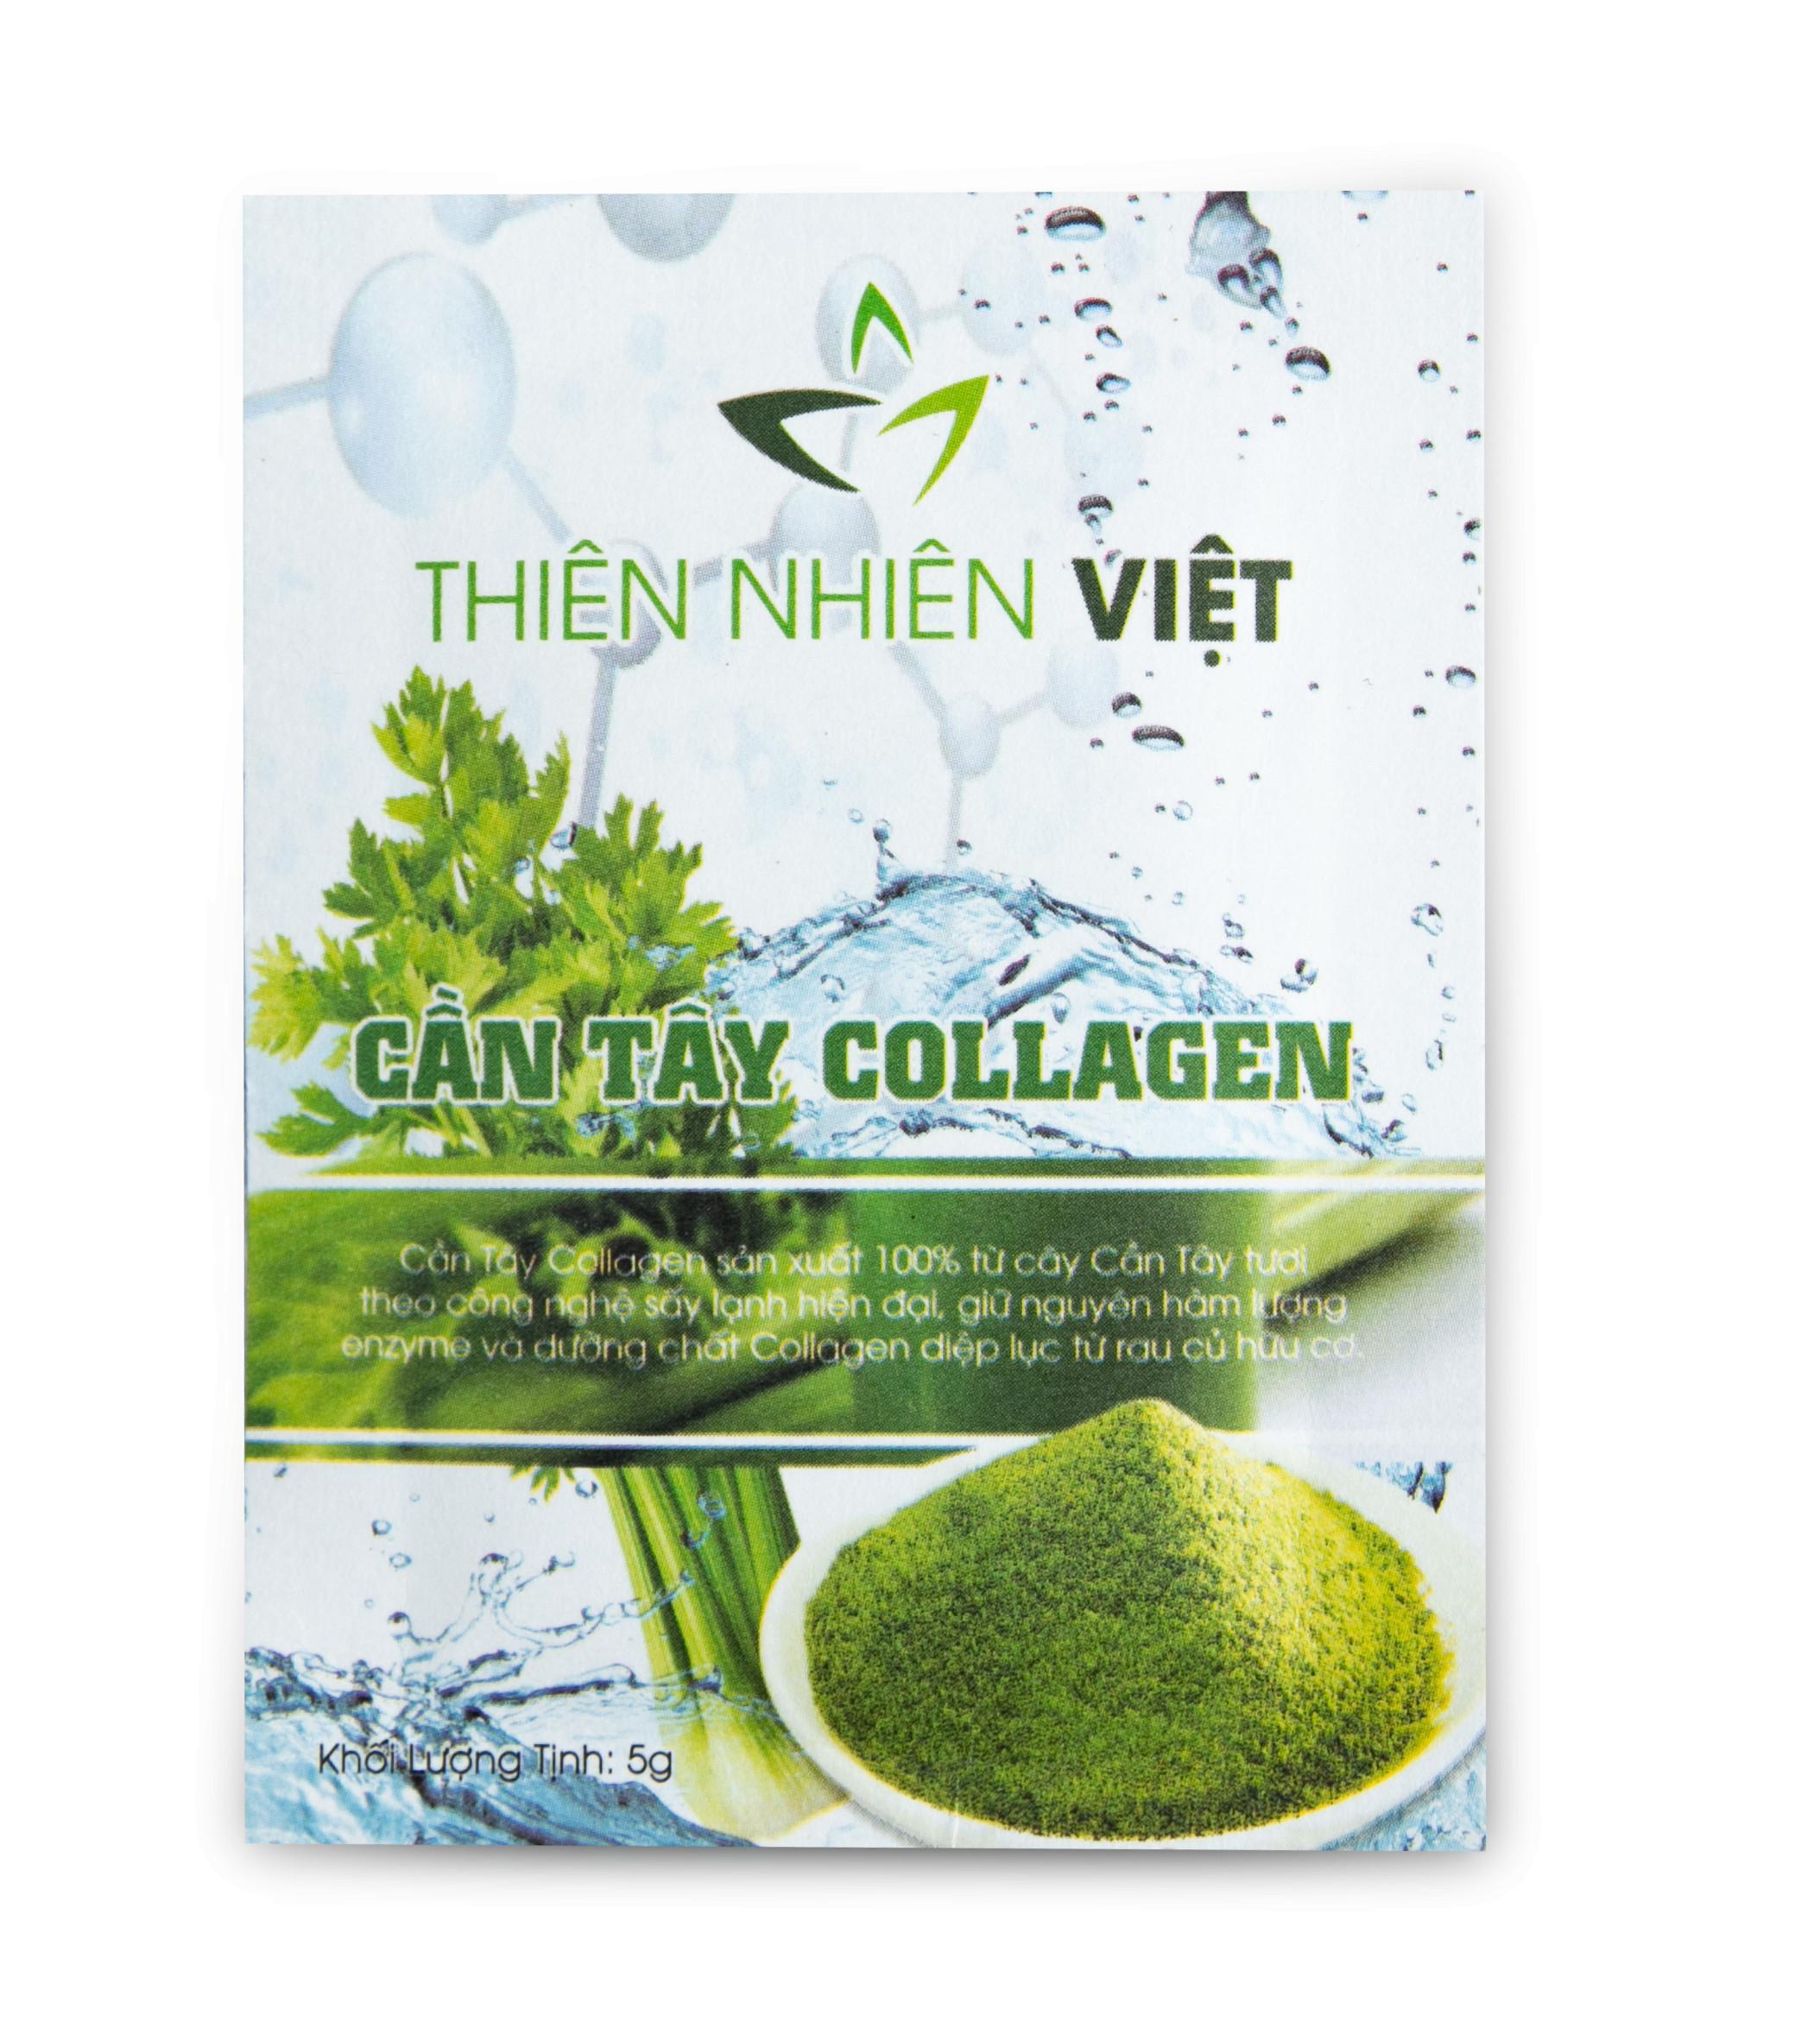 Cần Tây Collagen Thiên Nhiên Việt